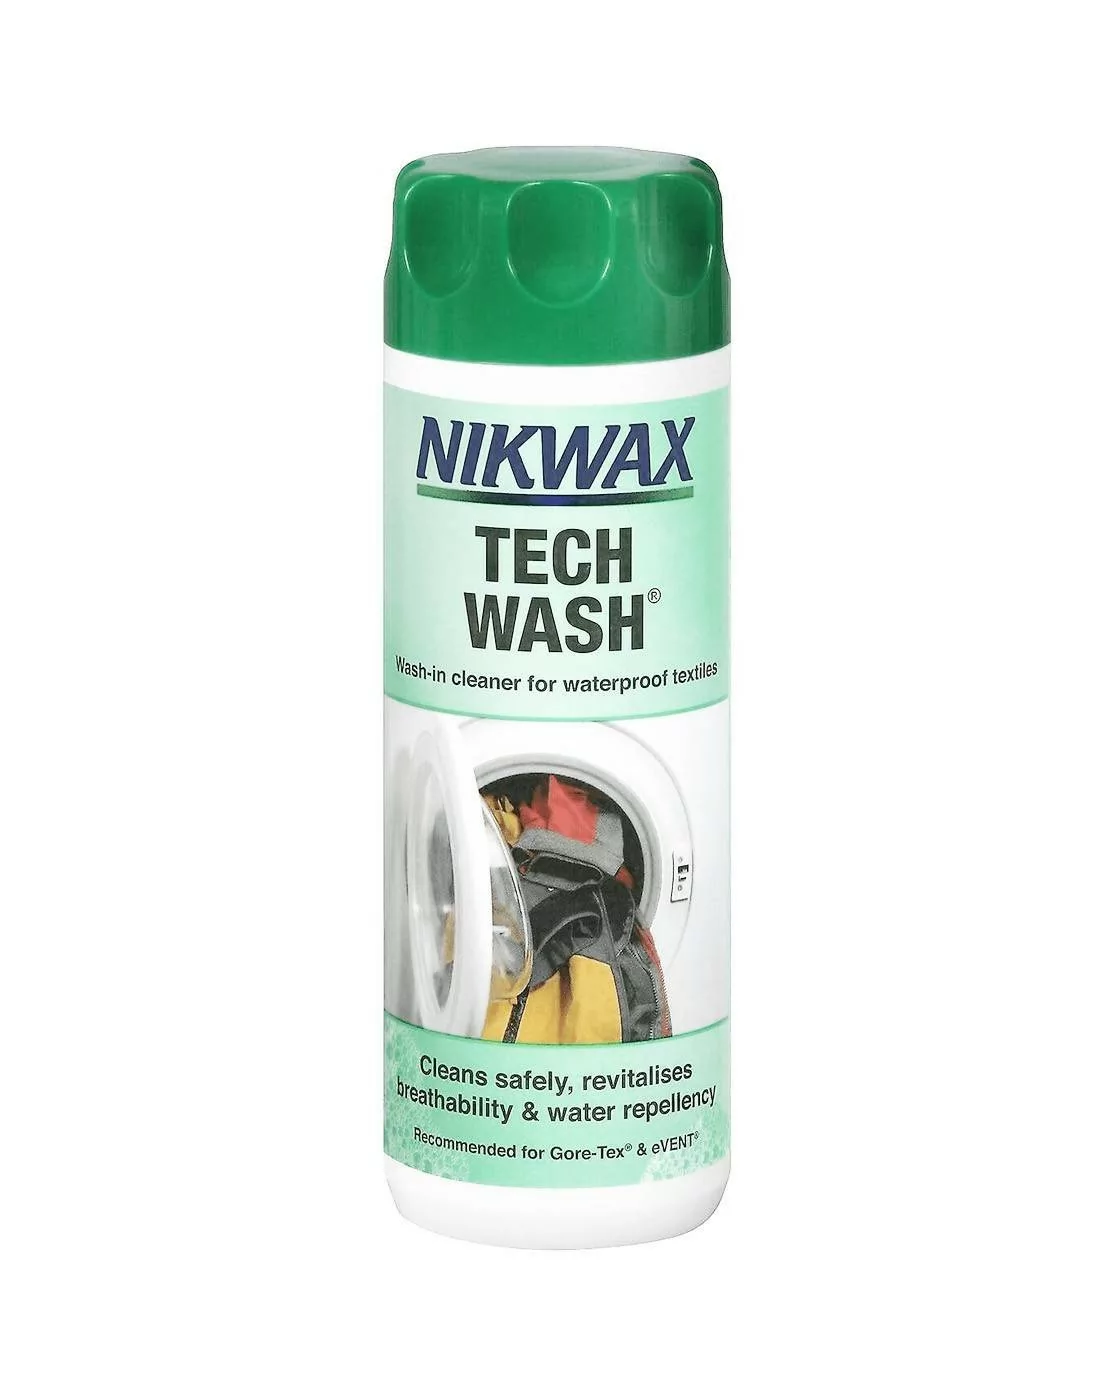 NIKWAX Tech Wash